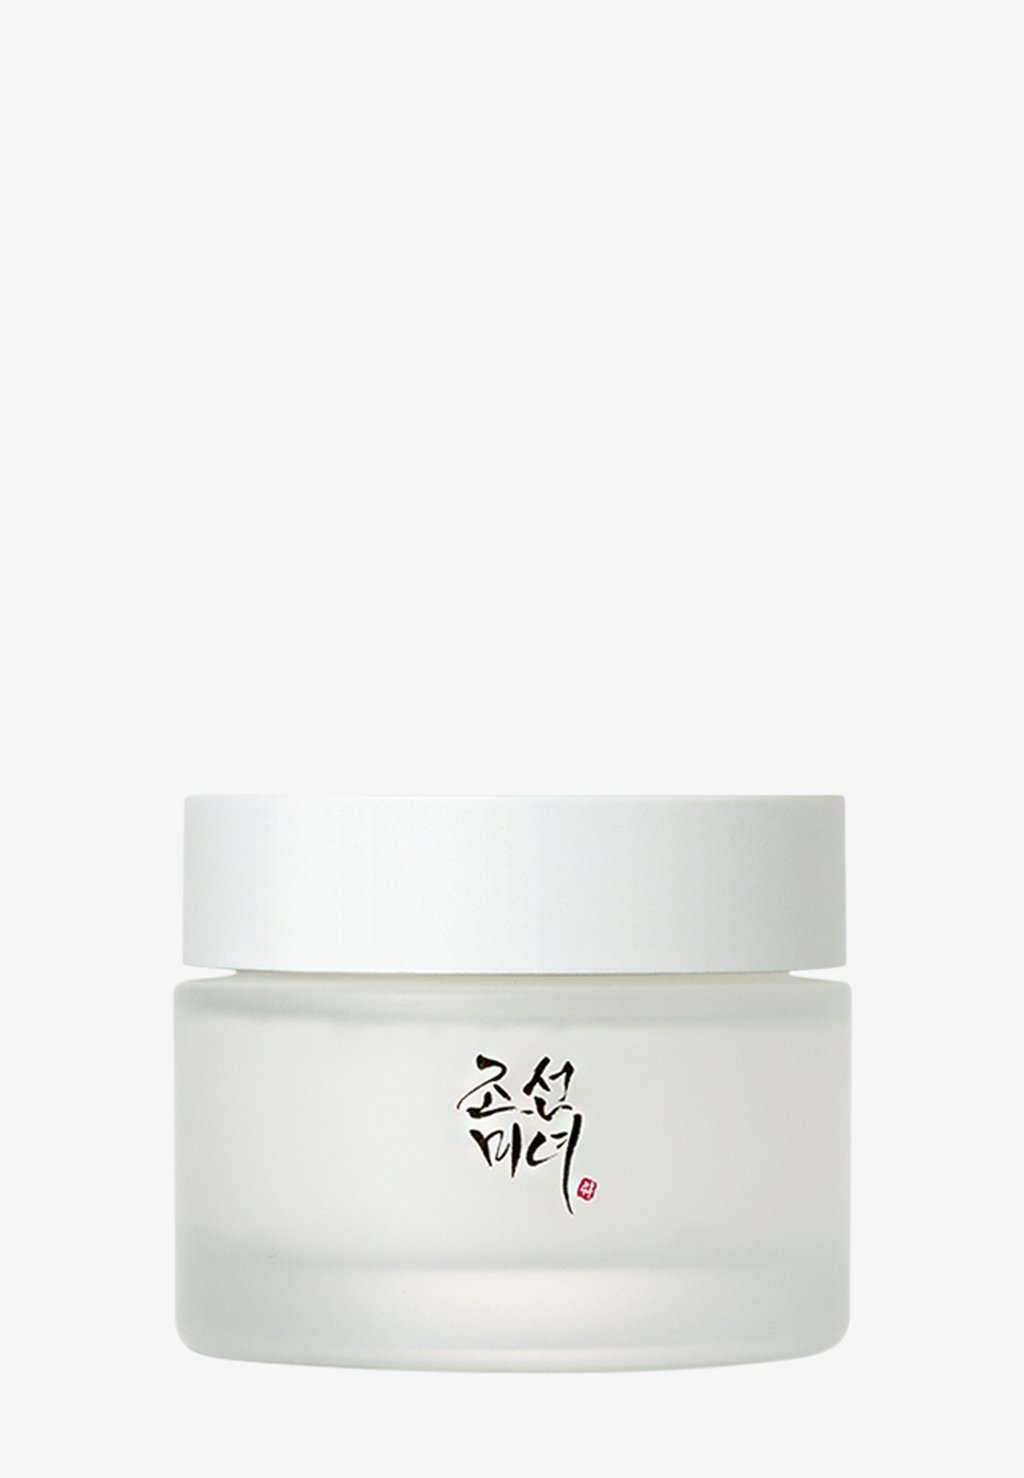 Крем для лица DYNASTY CREAM Beauty of Joseon питательный крем для лица beauty of joseon dynasty cream 50 мл